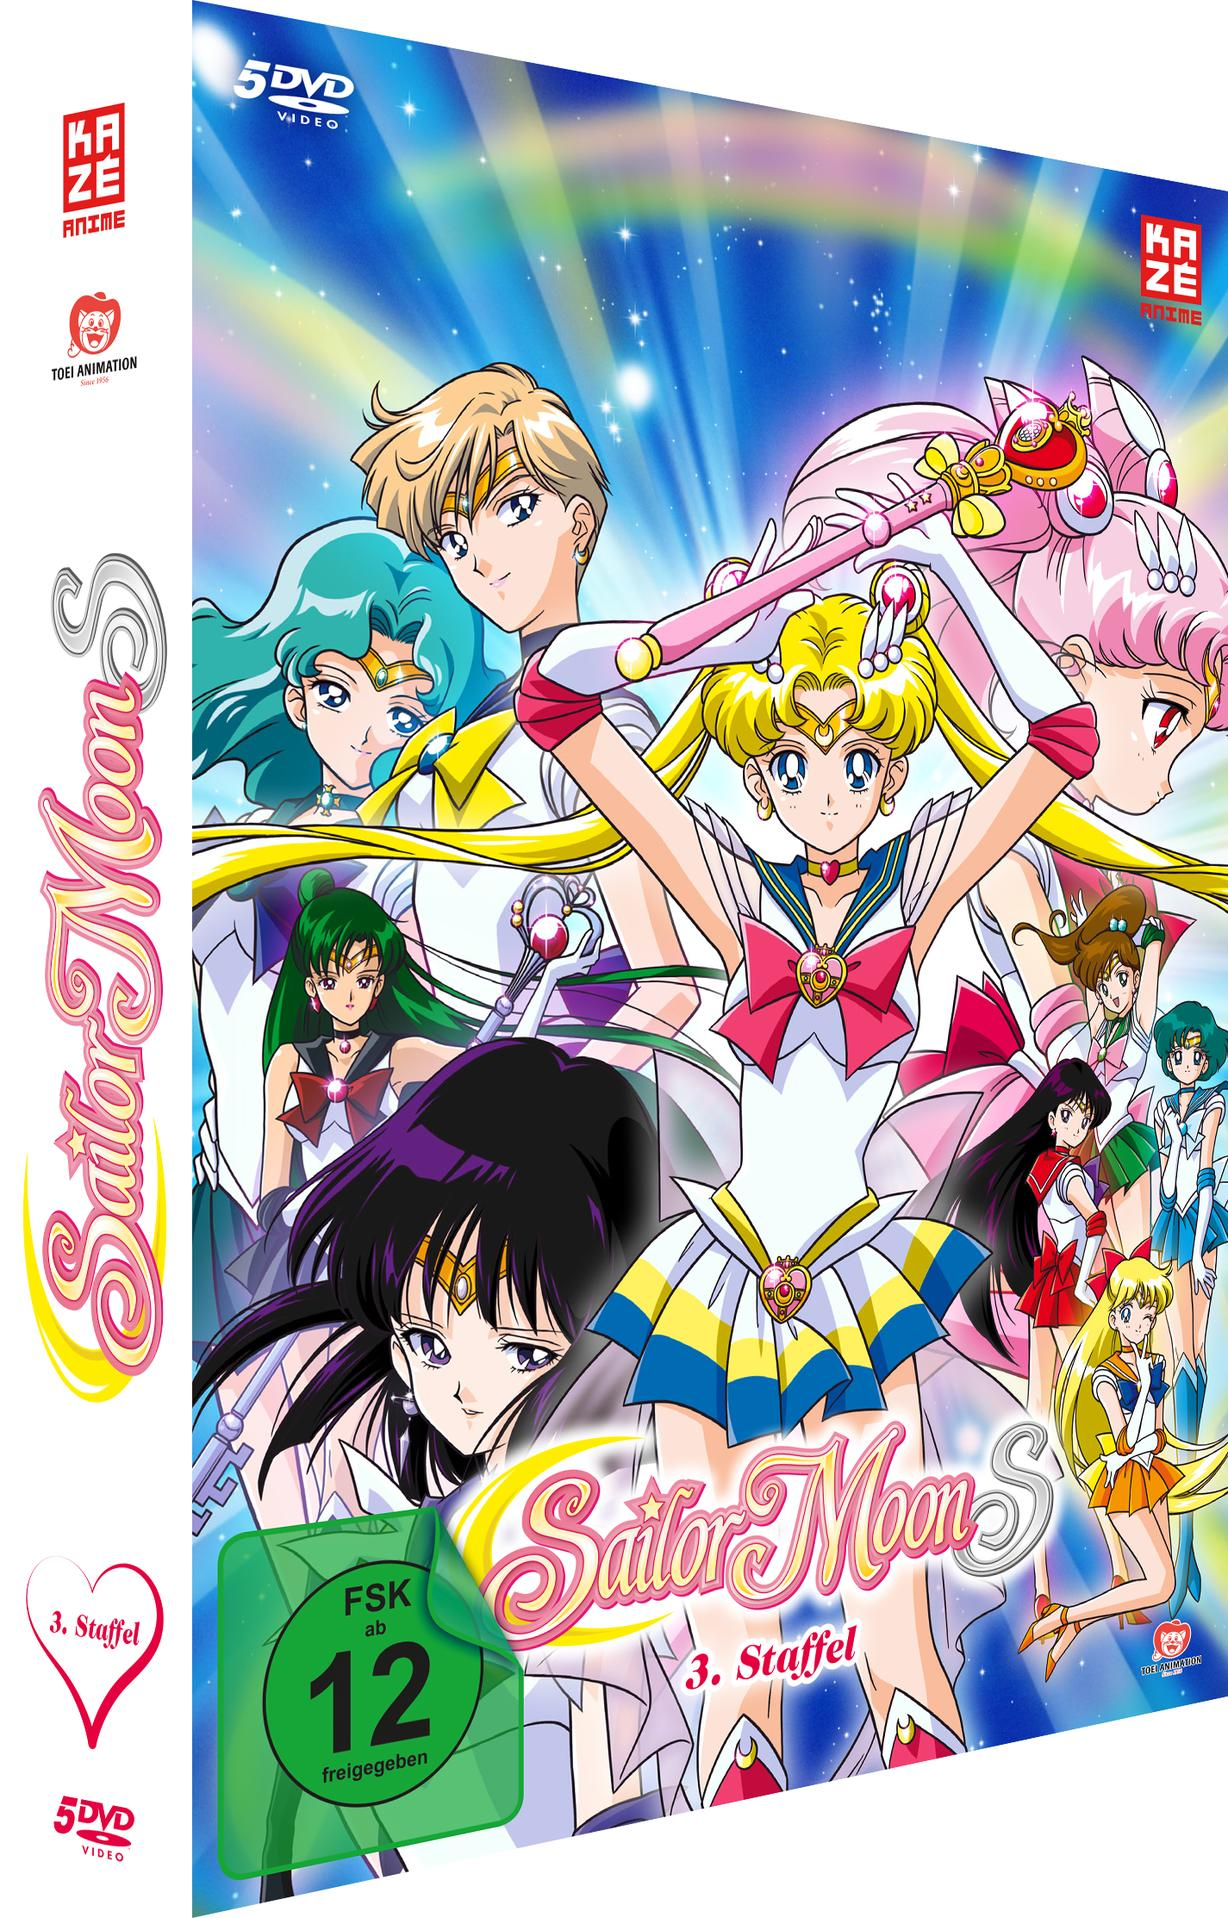 Sailor Moon S - - 3 Staffel DVD Gesamtausgabe